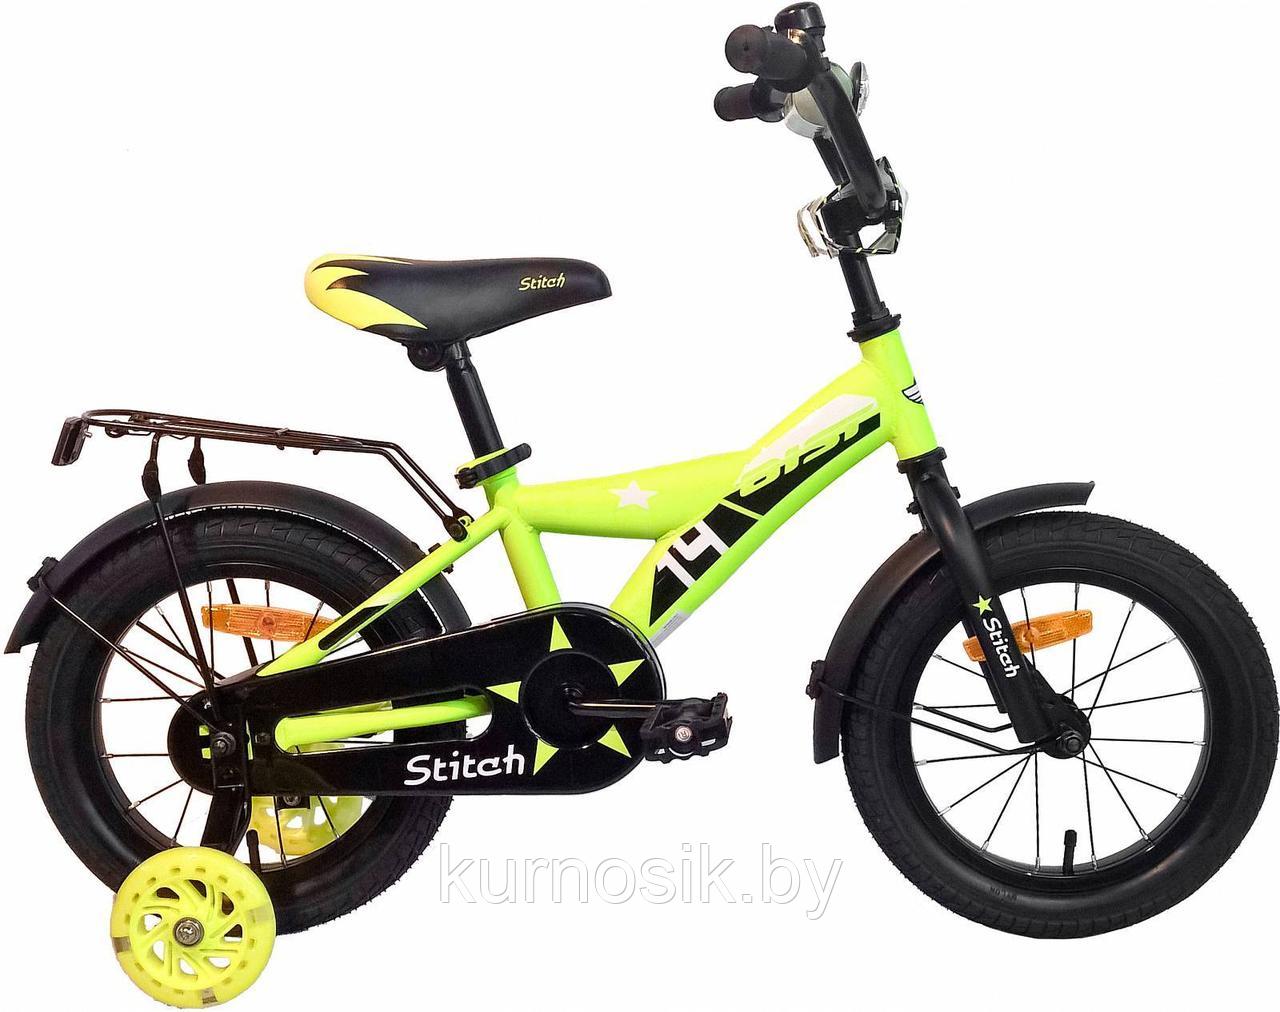 Детский велосипед Stitch 14 желтый (Stitch 14), фото 1